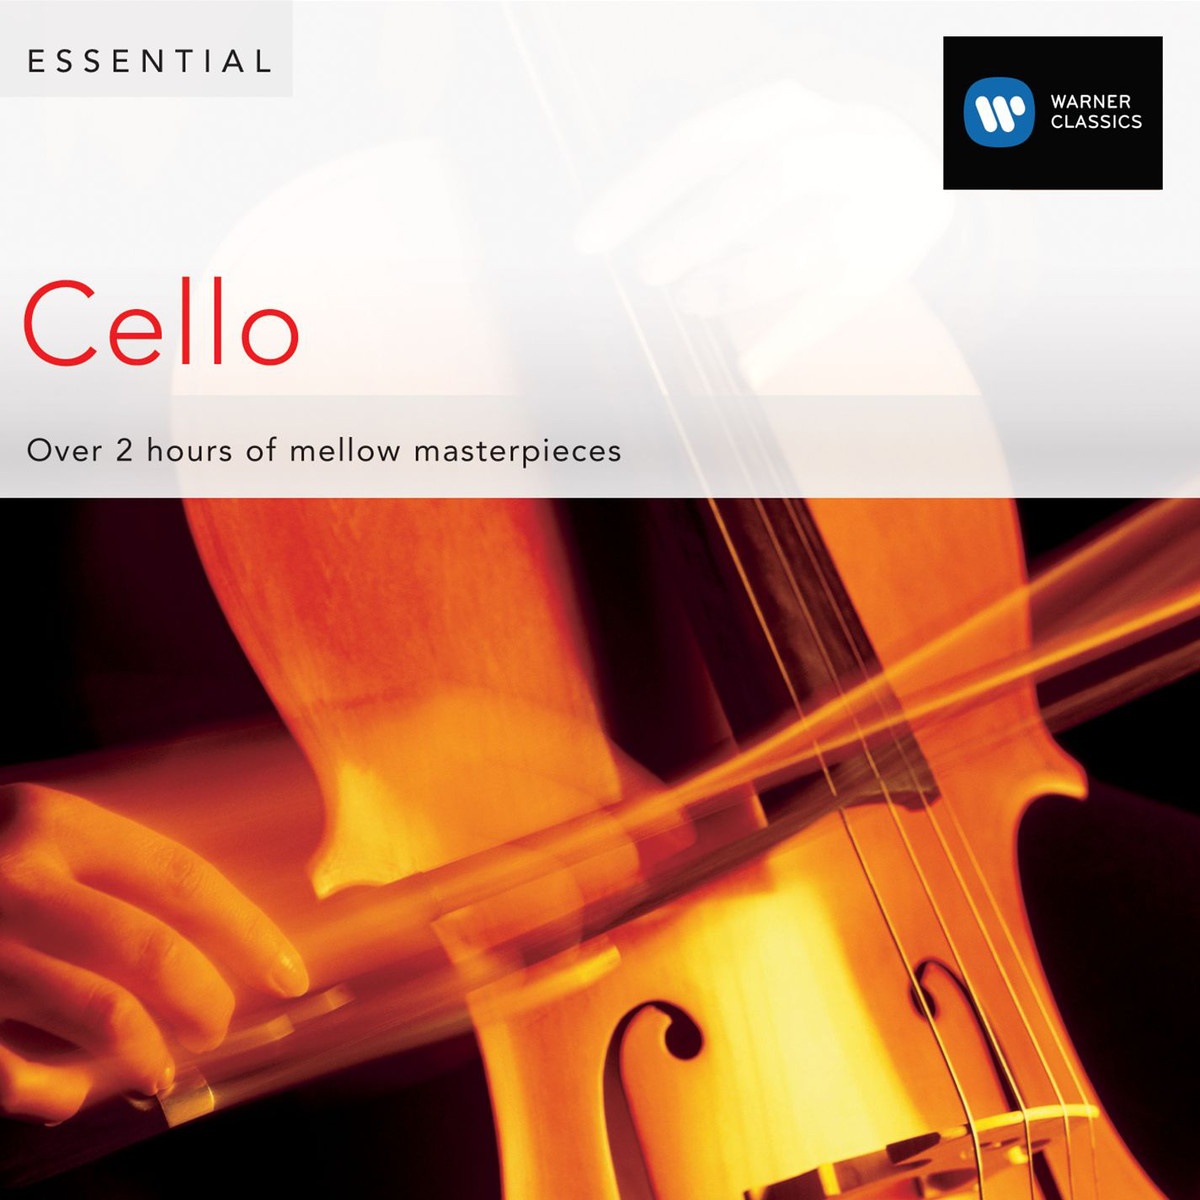 Concerto for Violin, Cello and Orchestra in A minor, Op. 102: Third movement: Vivace non troppo